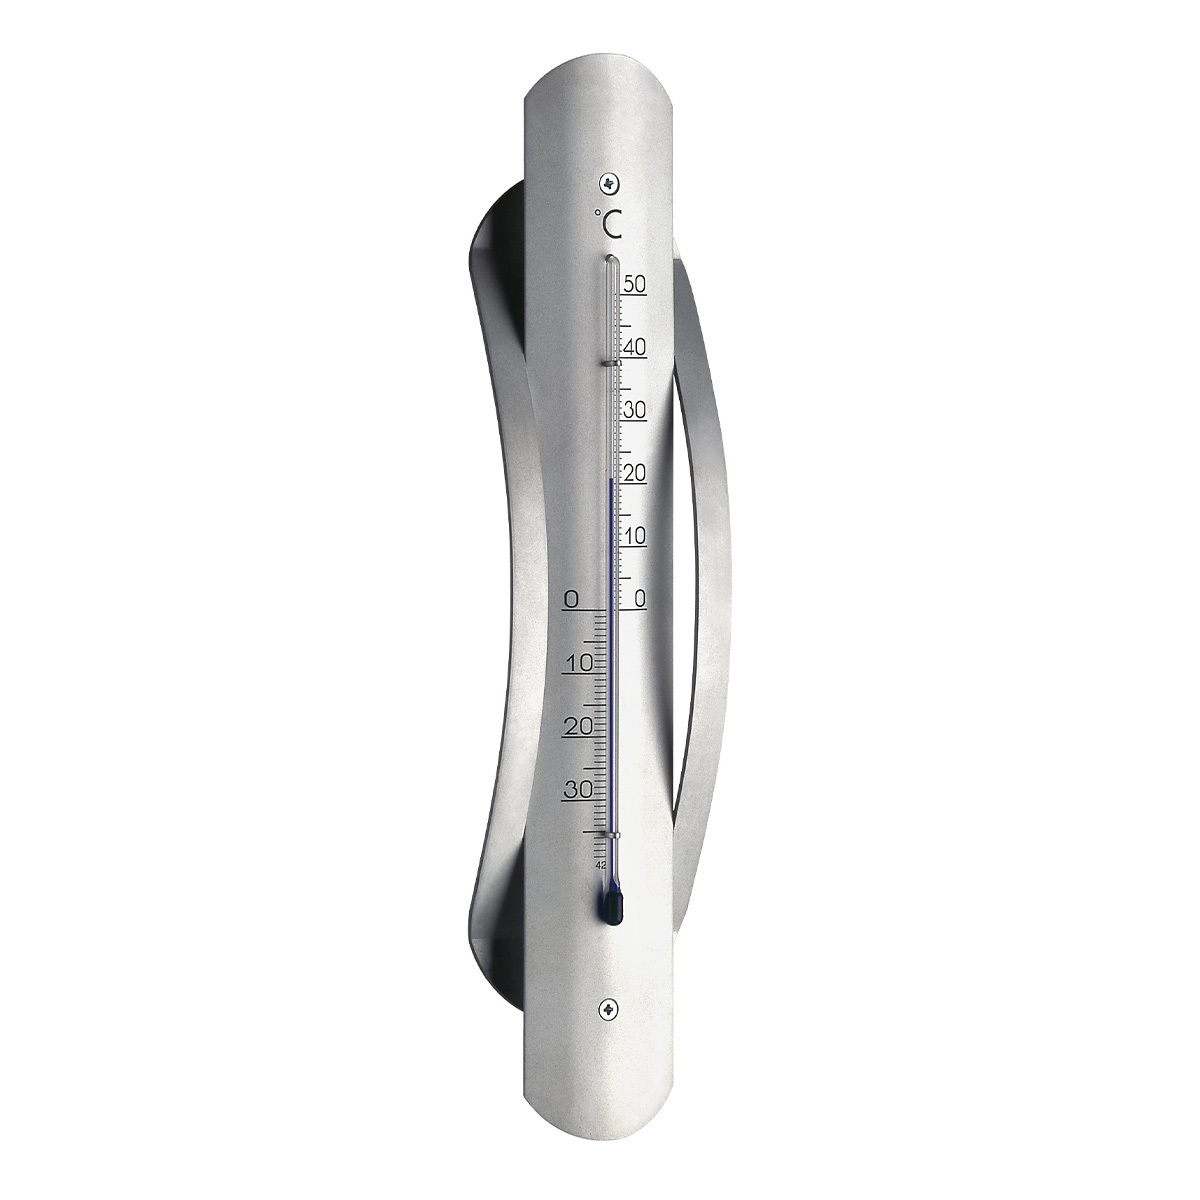 12-2044-innen-aussen-thermometer-aluminium-1200x1200px.jpg